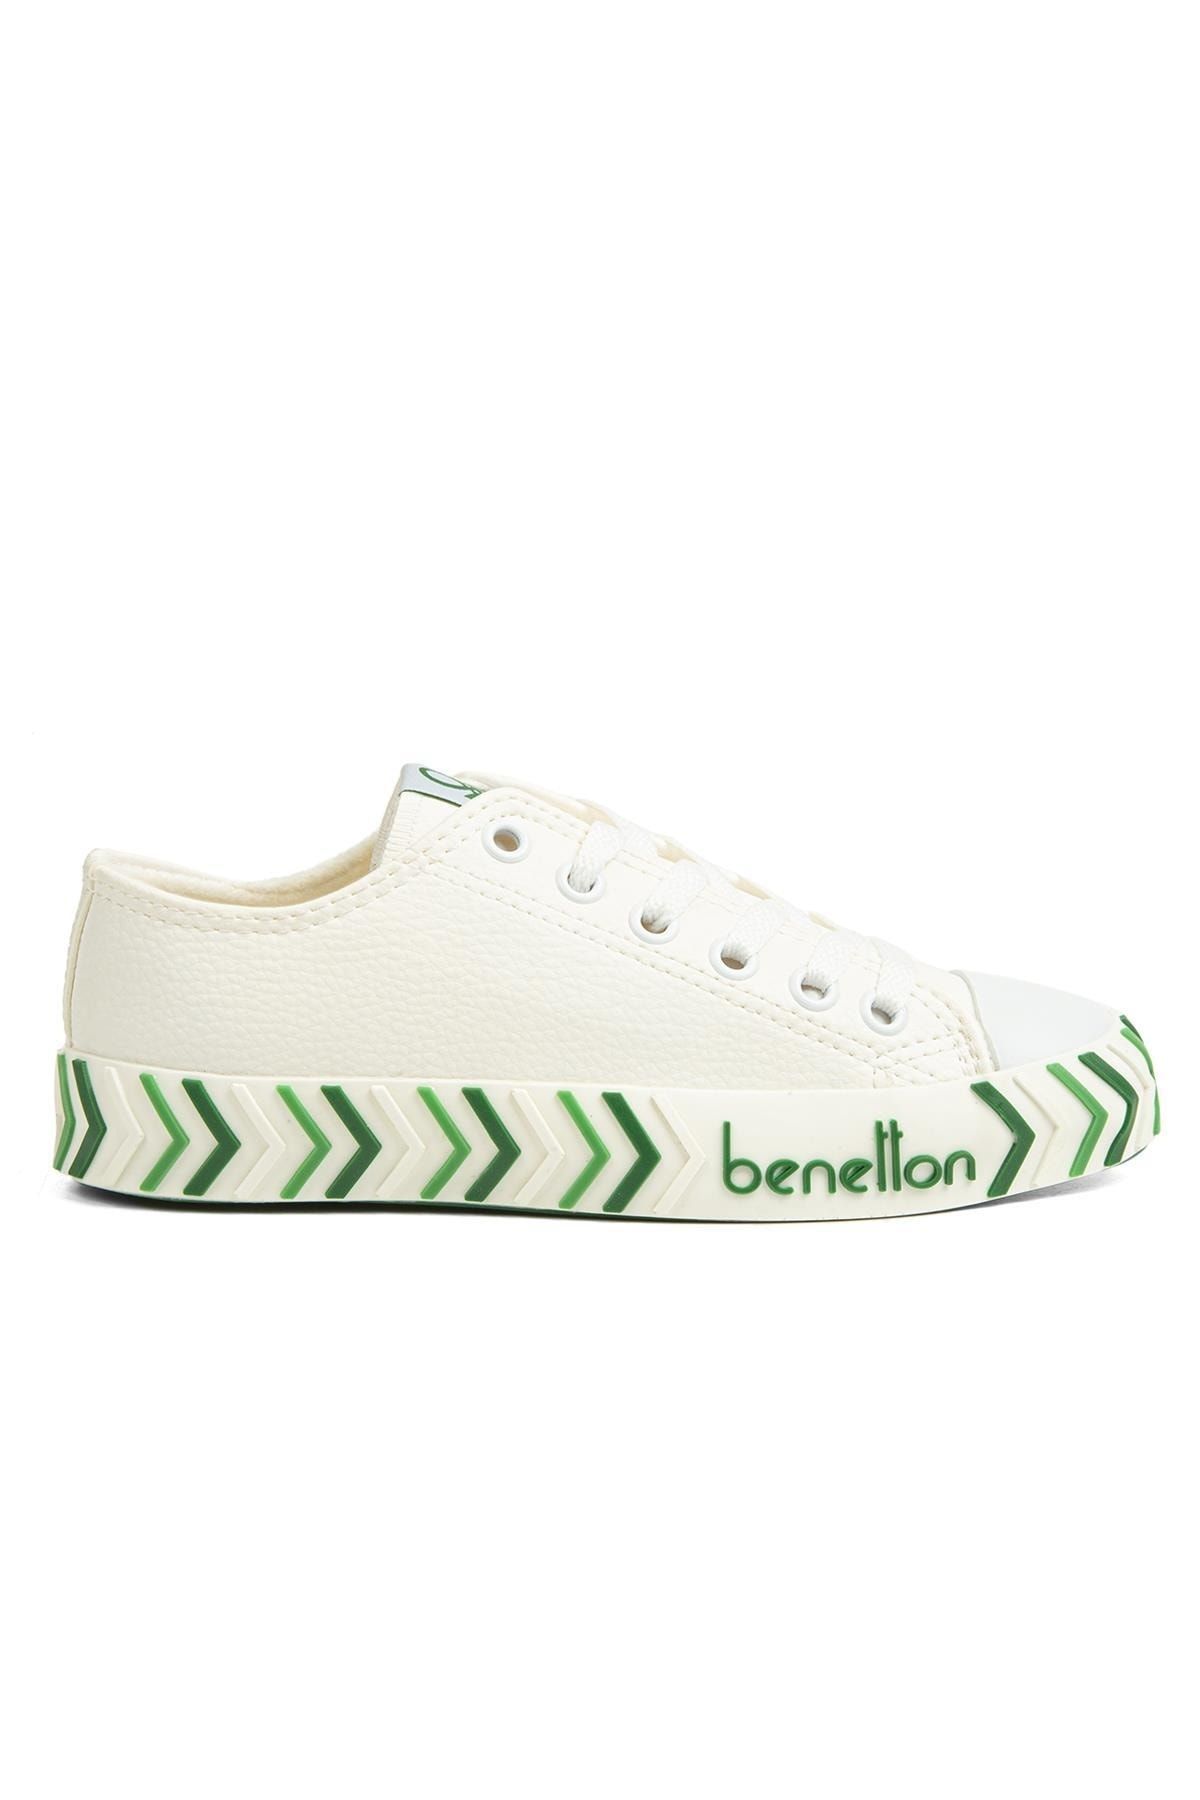 Benetton ® | Bn-30723 - 3374 Beyaz Yesil - Kadın Spor Ayakkabı